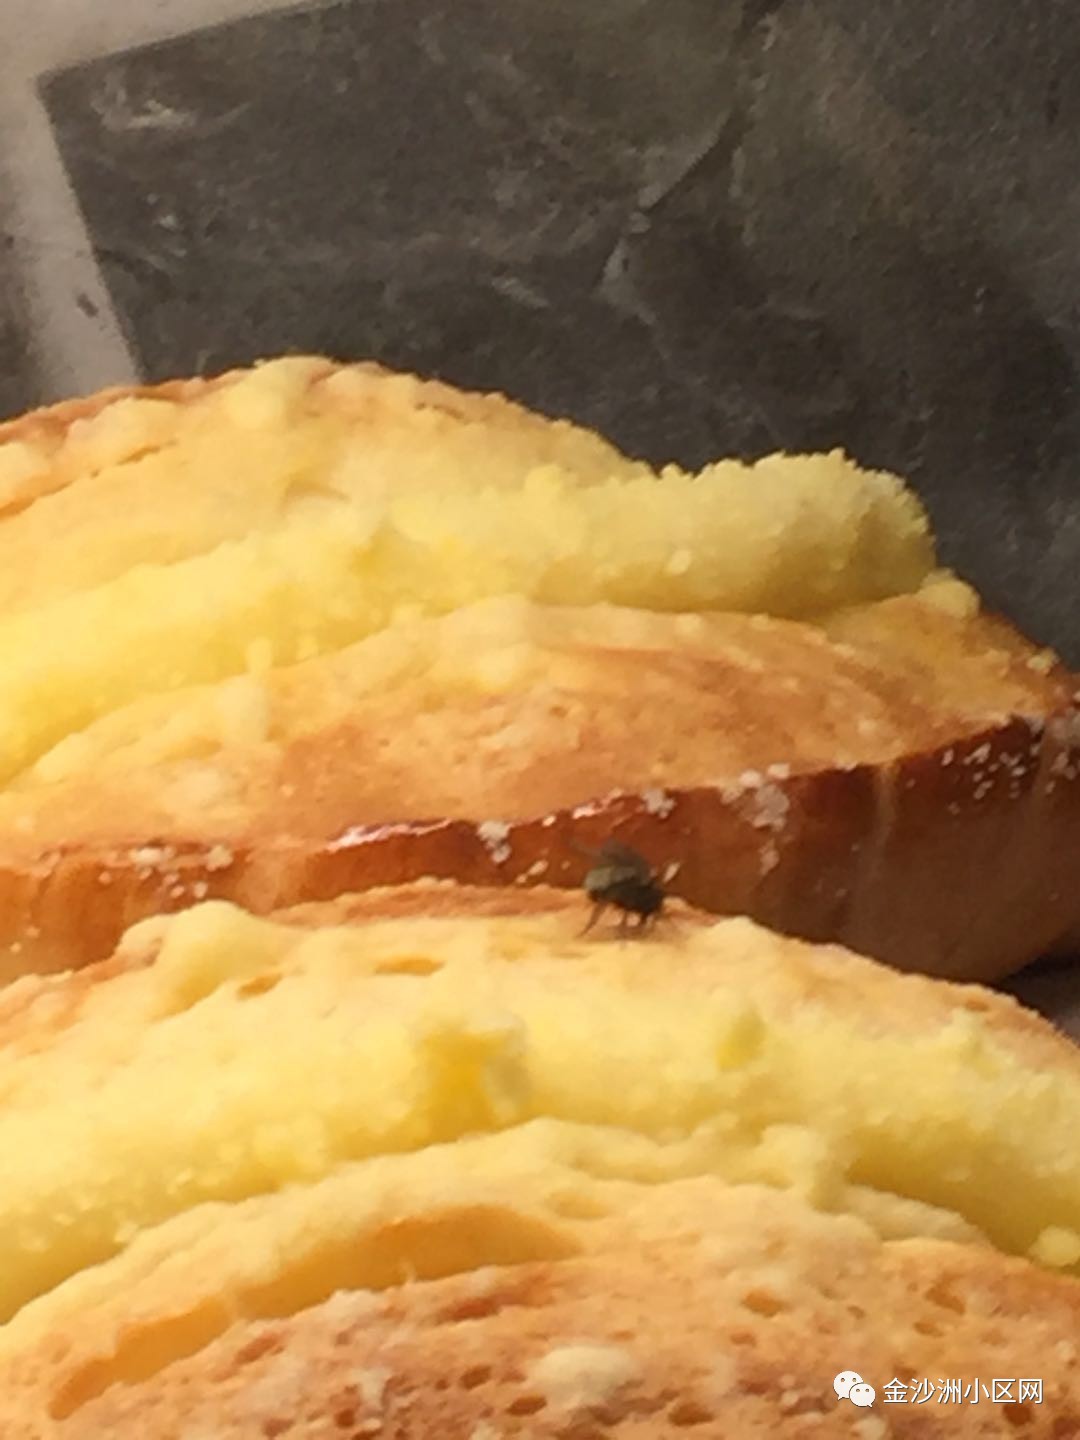 金名都商业街wcoffee面包店 多次见到苍蝇飞虫吃面包!